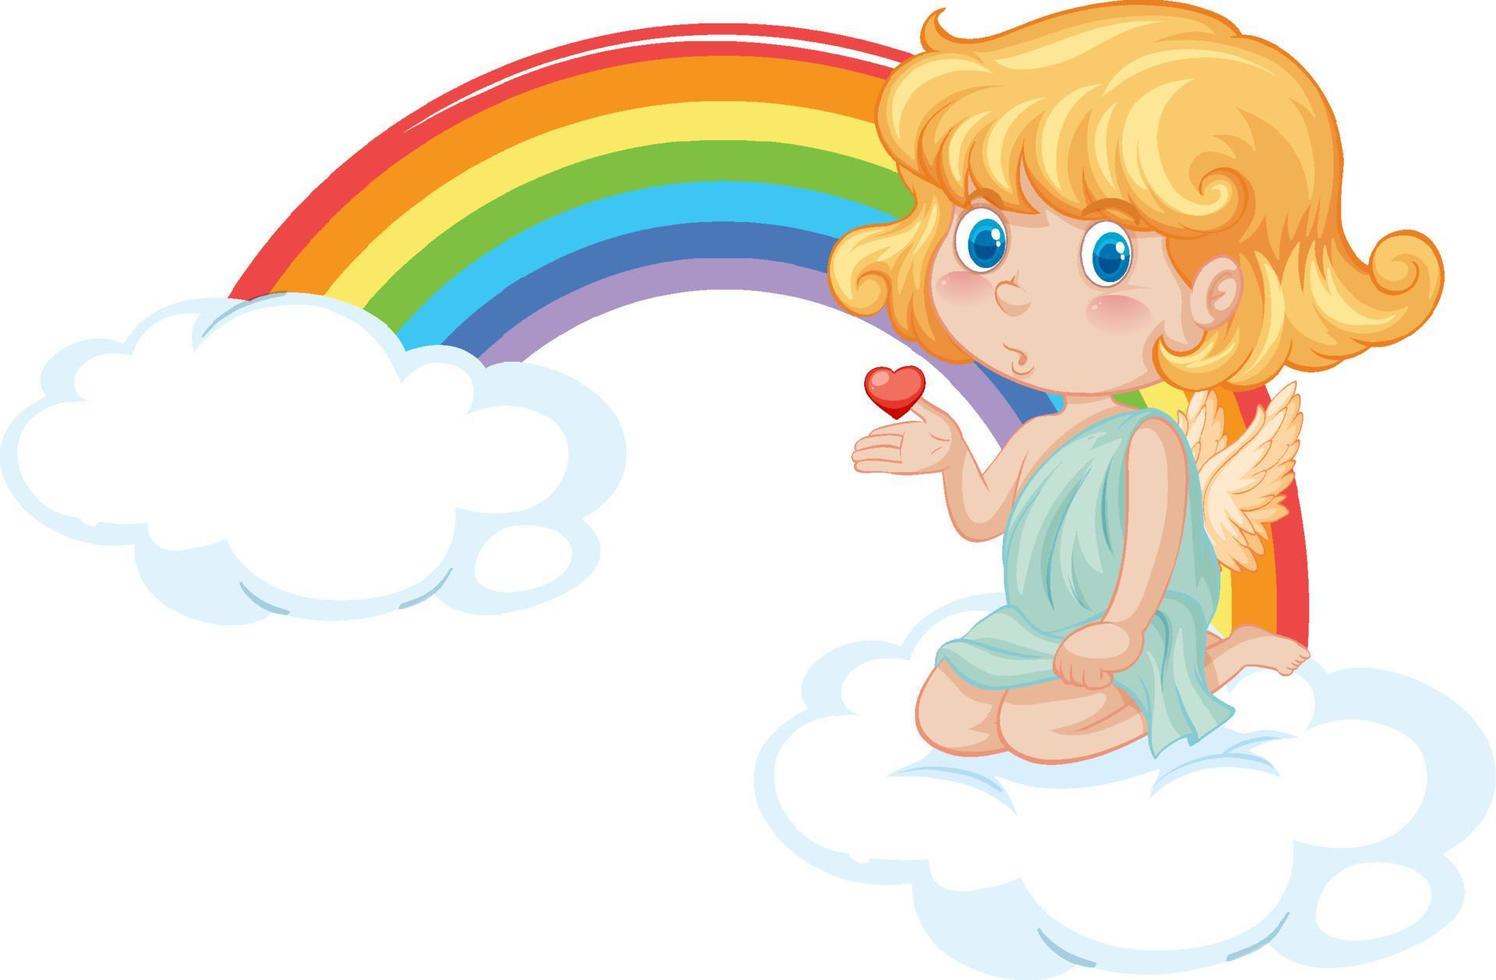 engel meisje zittend op een wolk met regenboog vector